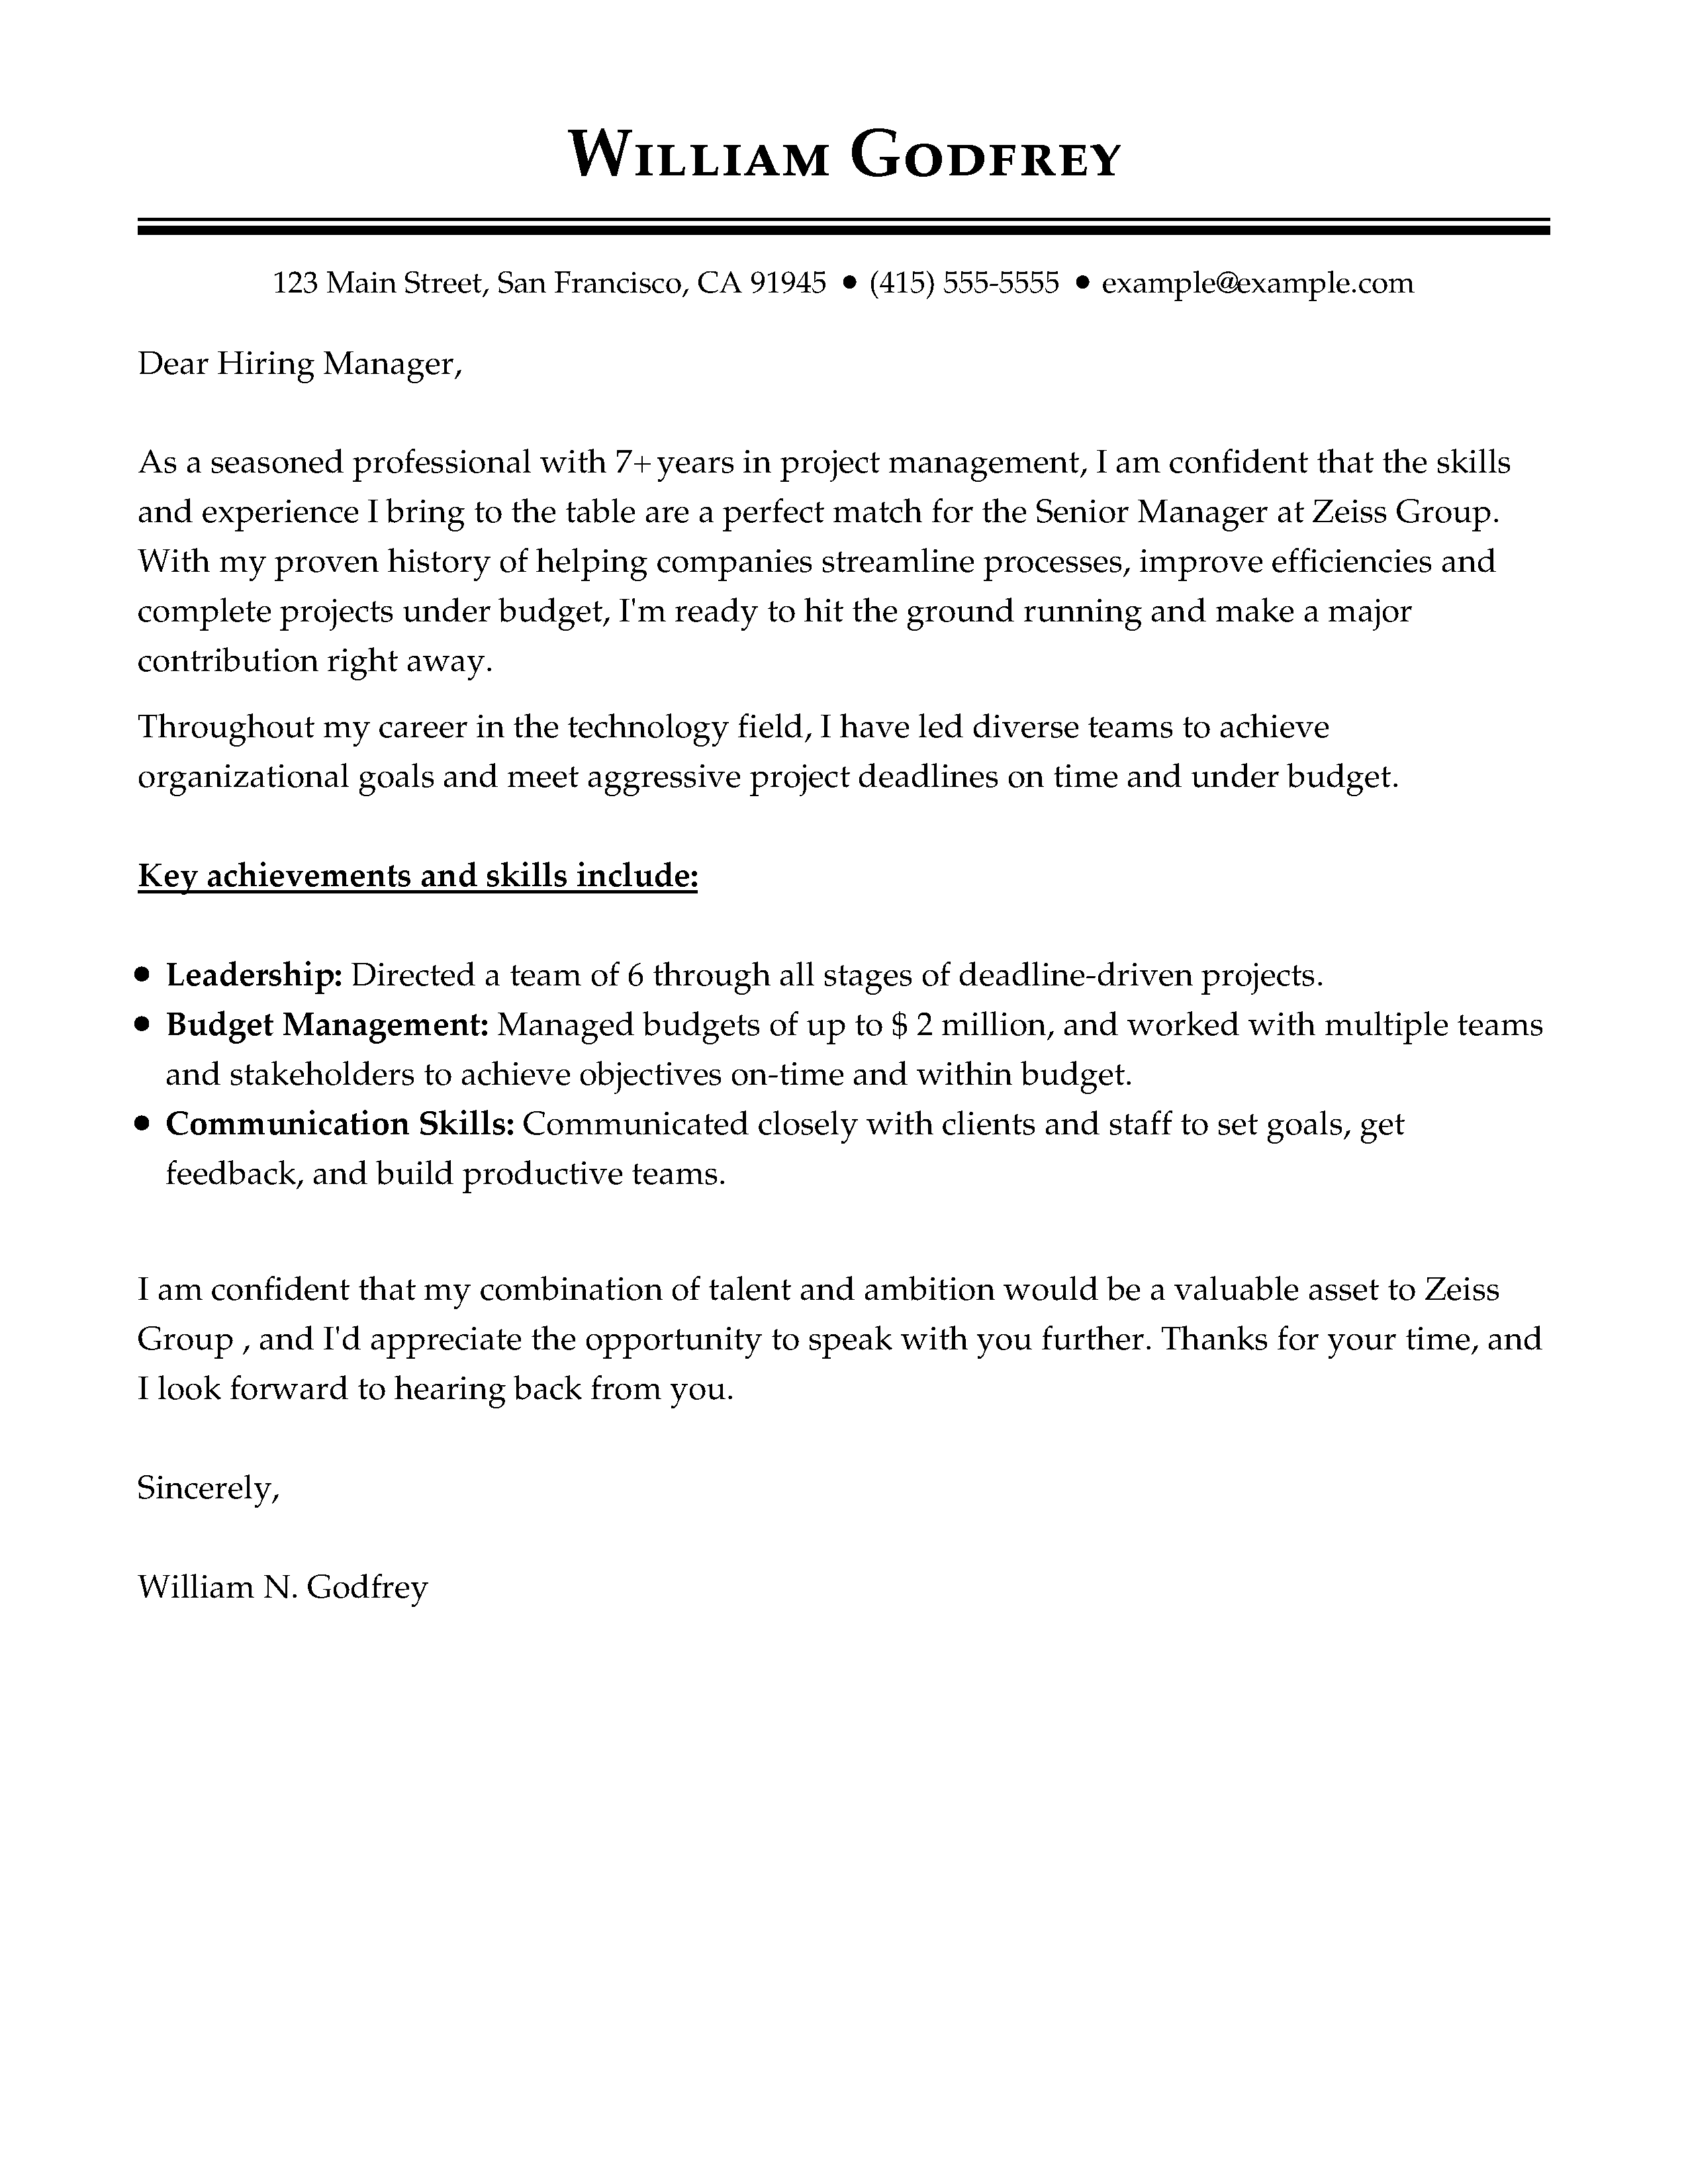 cover letter for job application senior manager